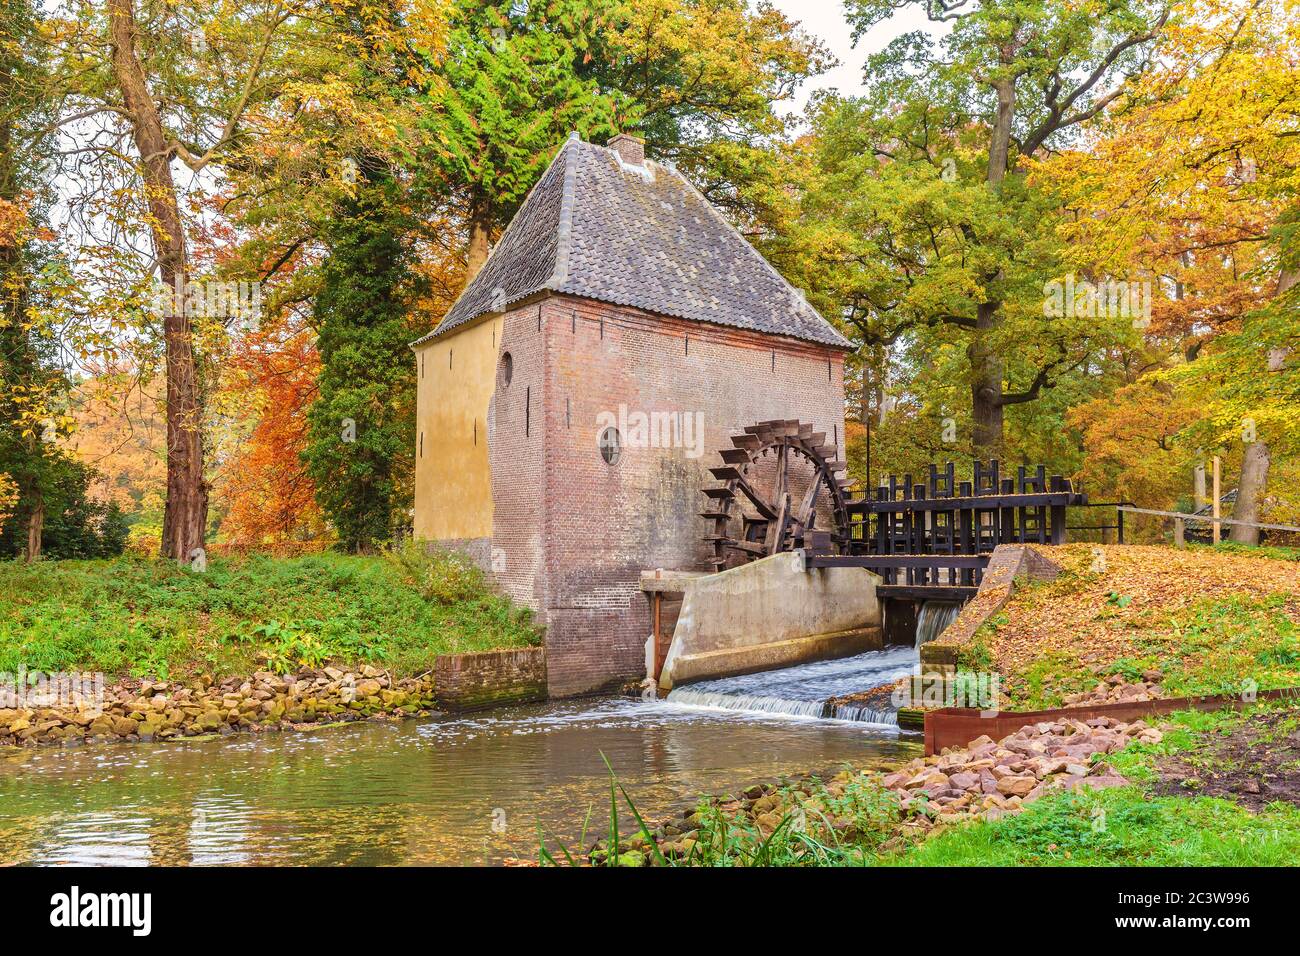 Ancien moulin à eau dans la province néerlandaise de Gelderland à l'automne Banque D'Images